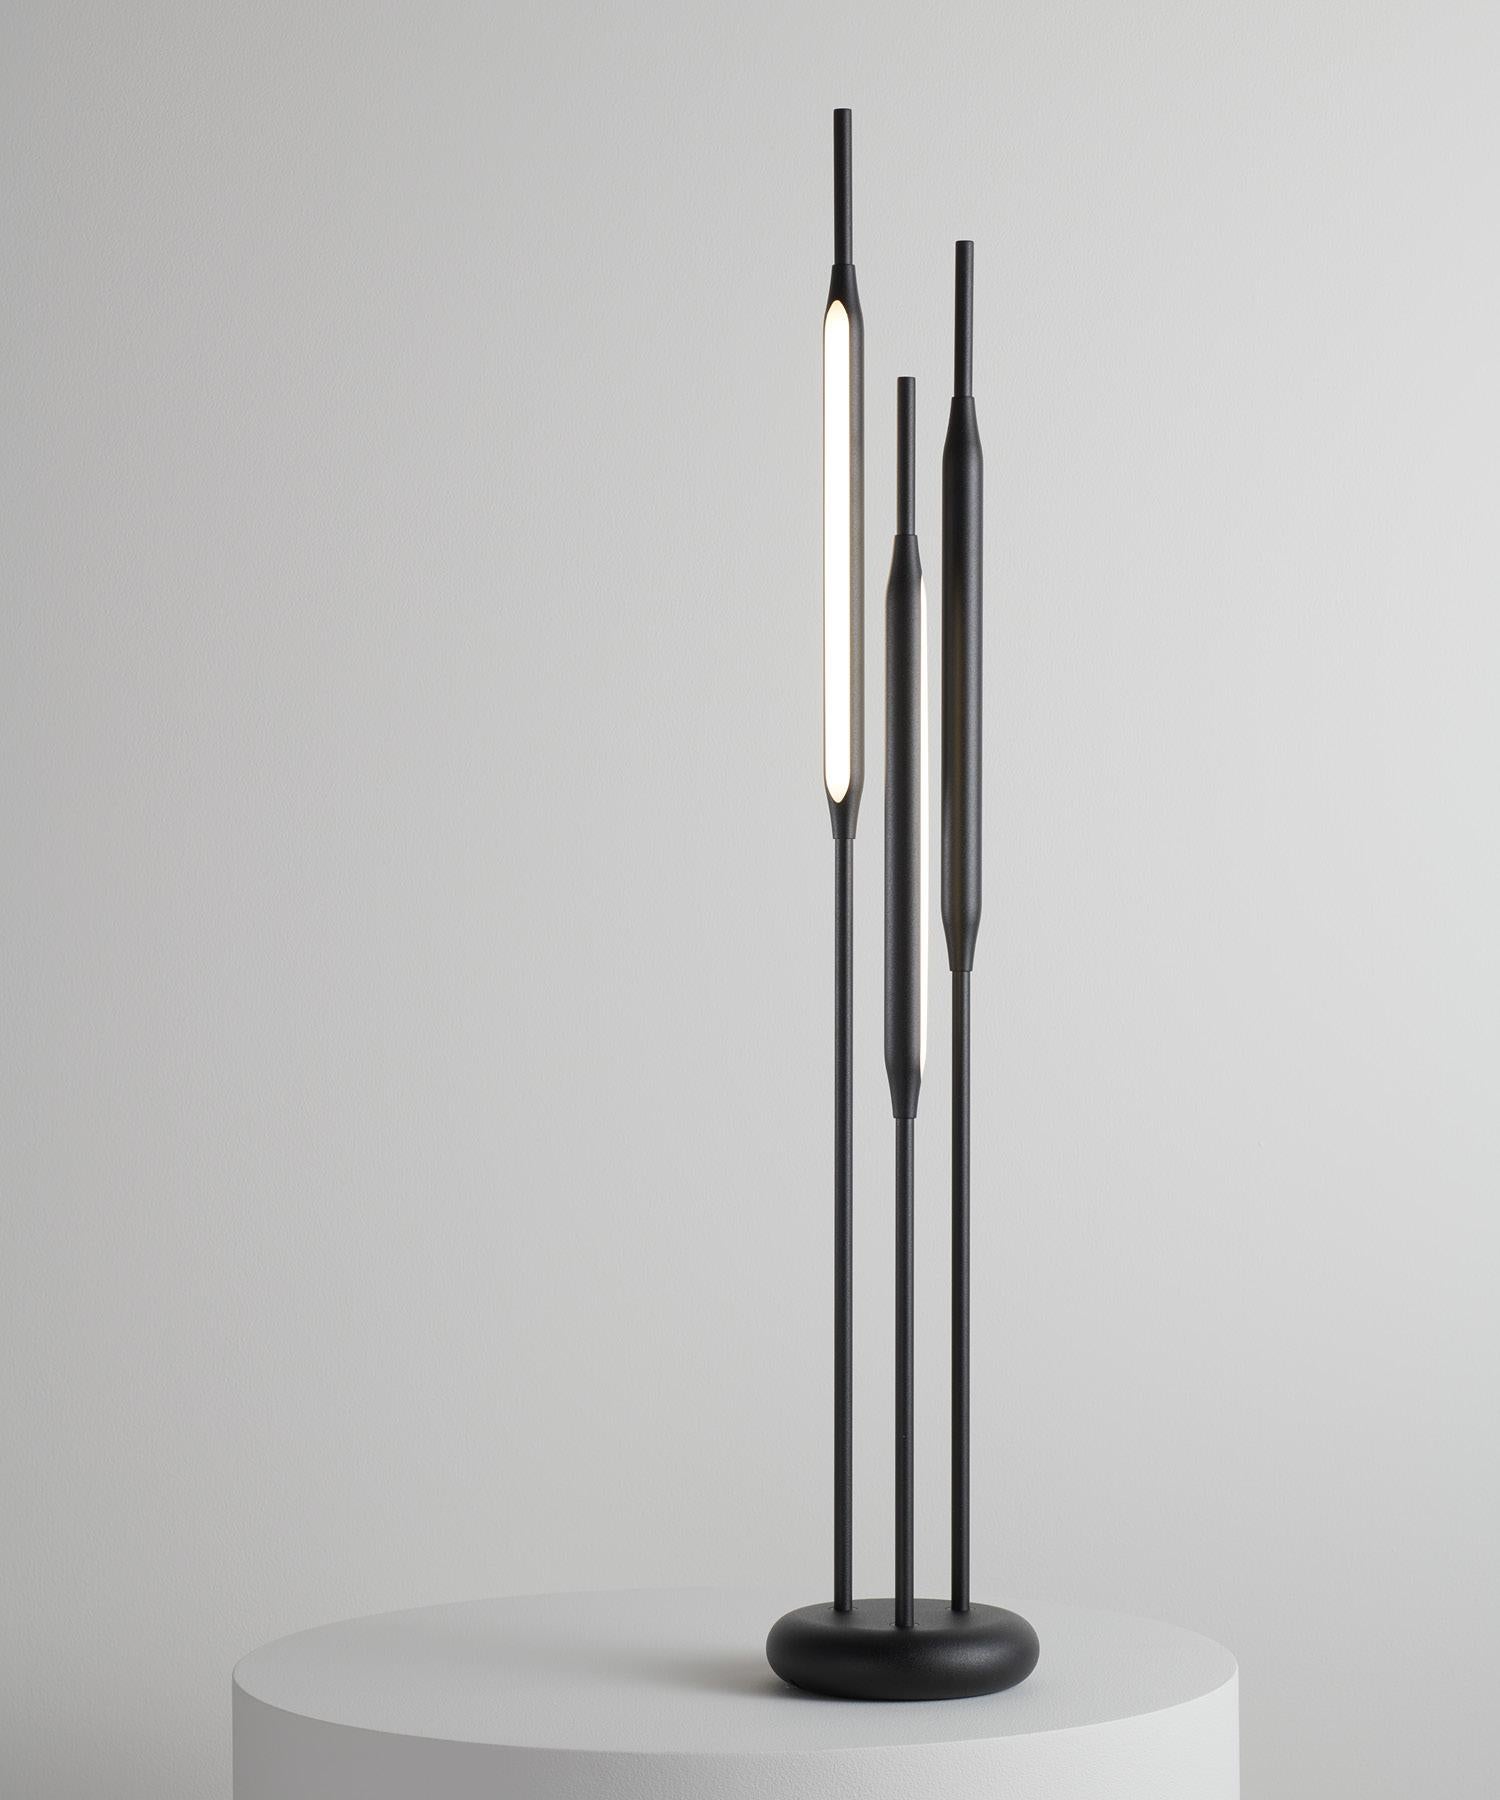 Inspiriert von filigranen, natürlichen Formen, setzen die Reed Table Lights stimmungsvolle Akzente in anspruchsvollen Interieurs.
Einzeln oder in kleinen Gruppen eingesetzt, können sie als Hilfsmittel zur Schaffung einer alternativen Umgebung